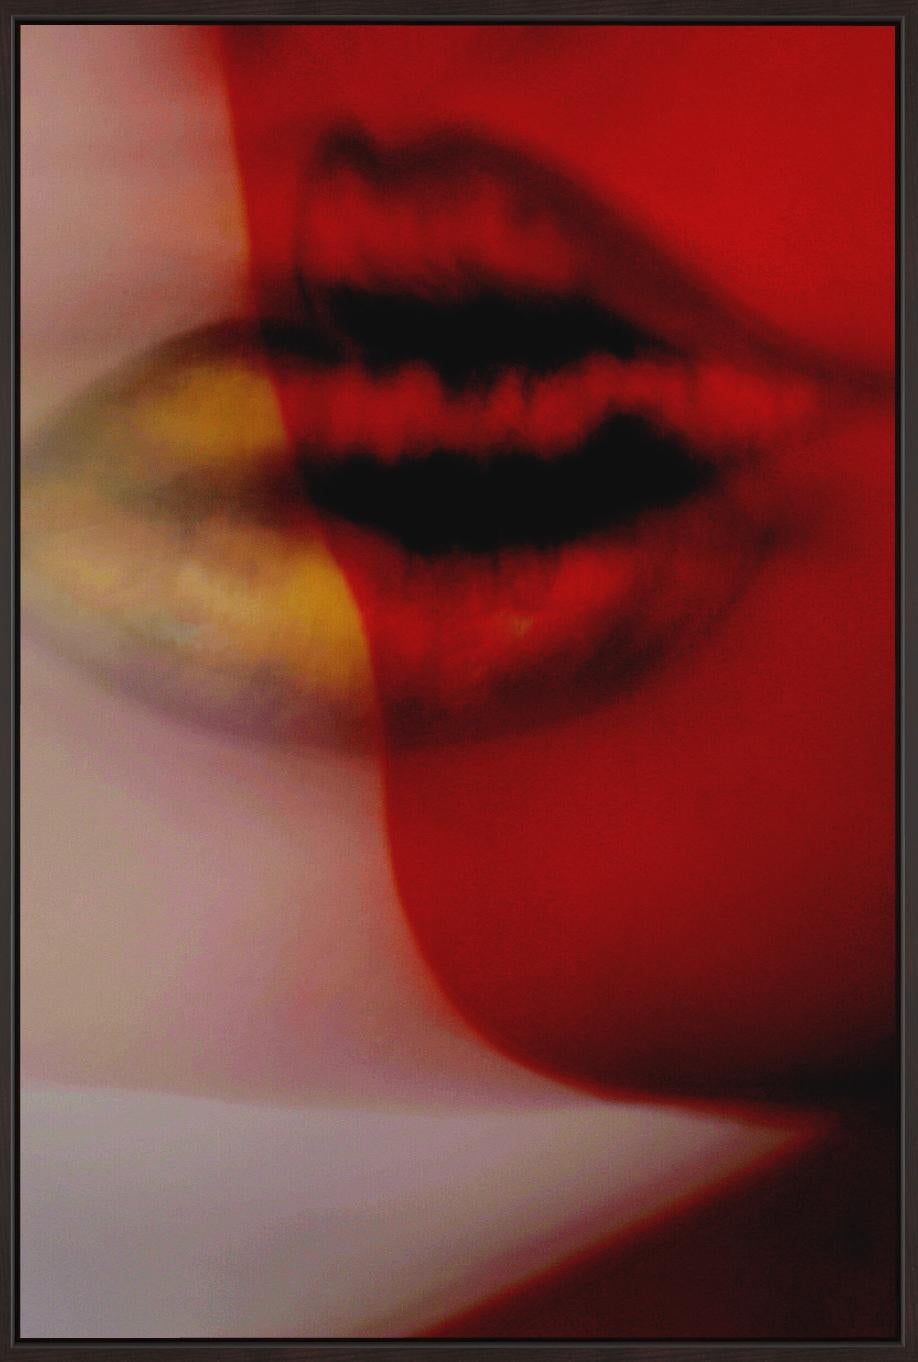 Kuss - Abstrakt-expressionistische Kunstfotografie – Photograph von Roger Reist